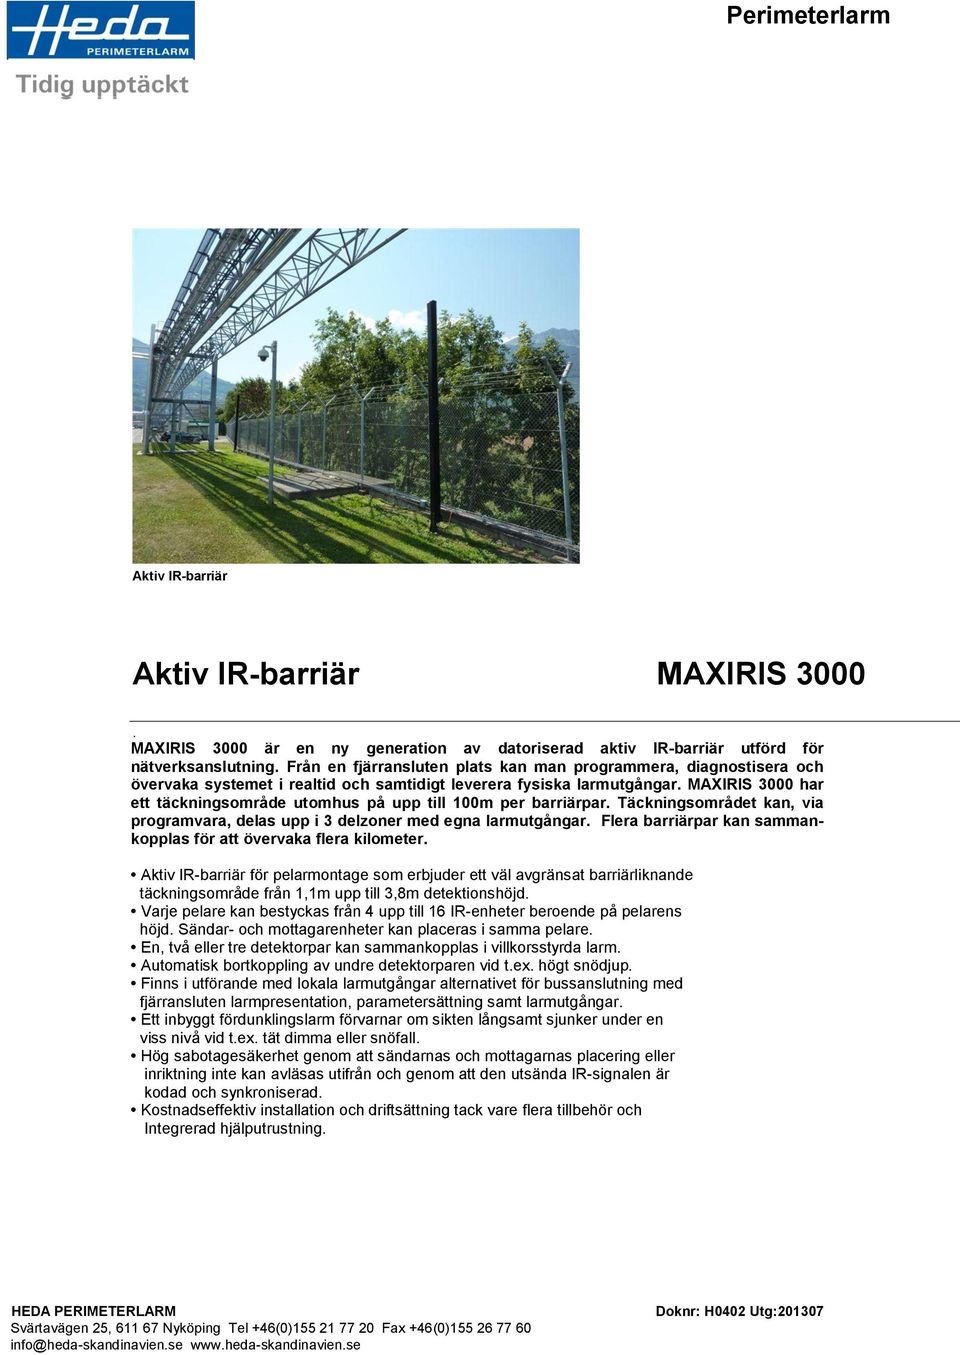 MAXIRIS 3000 har ett täckningsområde utomhus på upp till 100m per barriärpar. Täckningsområdet kan, via programvara, delas upp i 3 delzoner med egna larmutgångar.